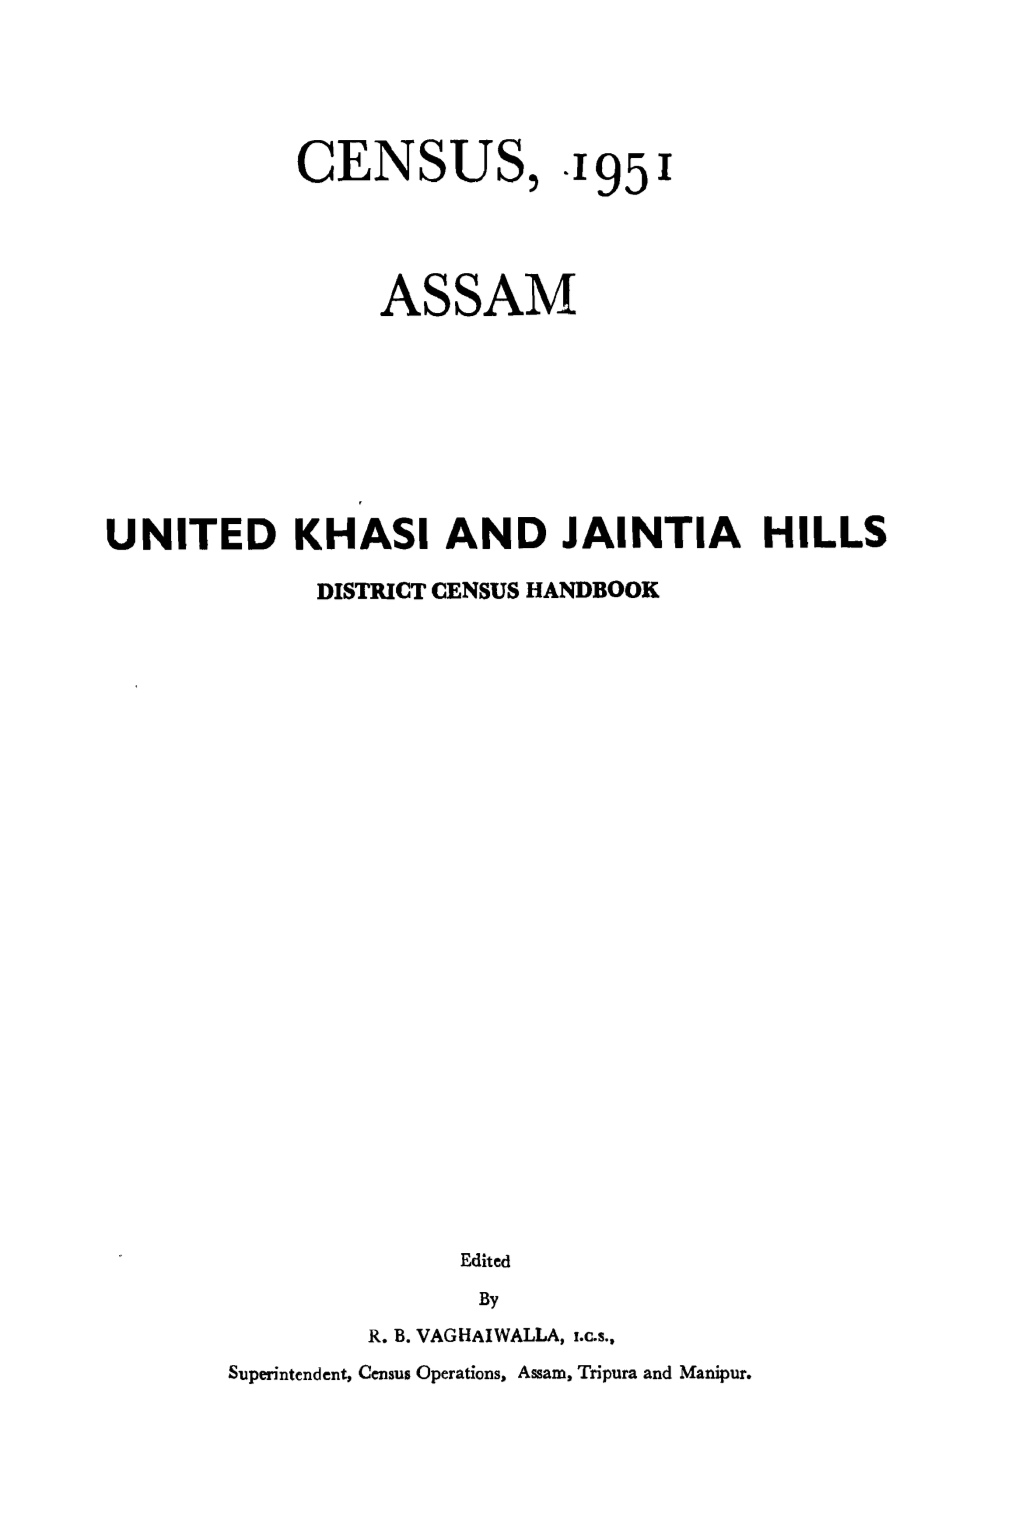 United Khasi and Jaintia Hills District Census Handbook